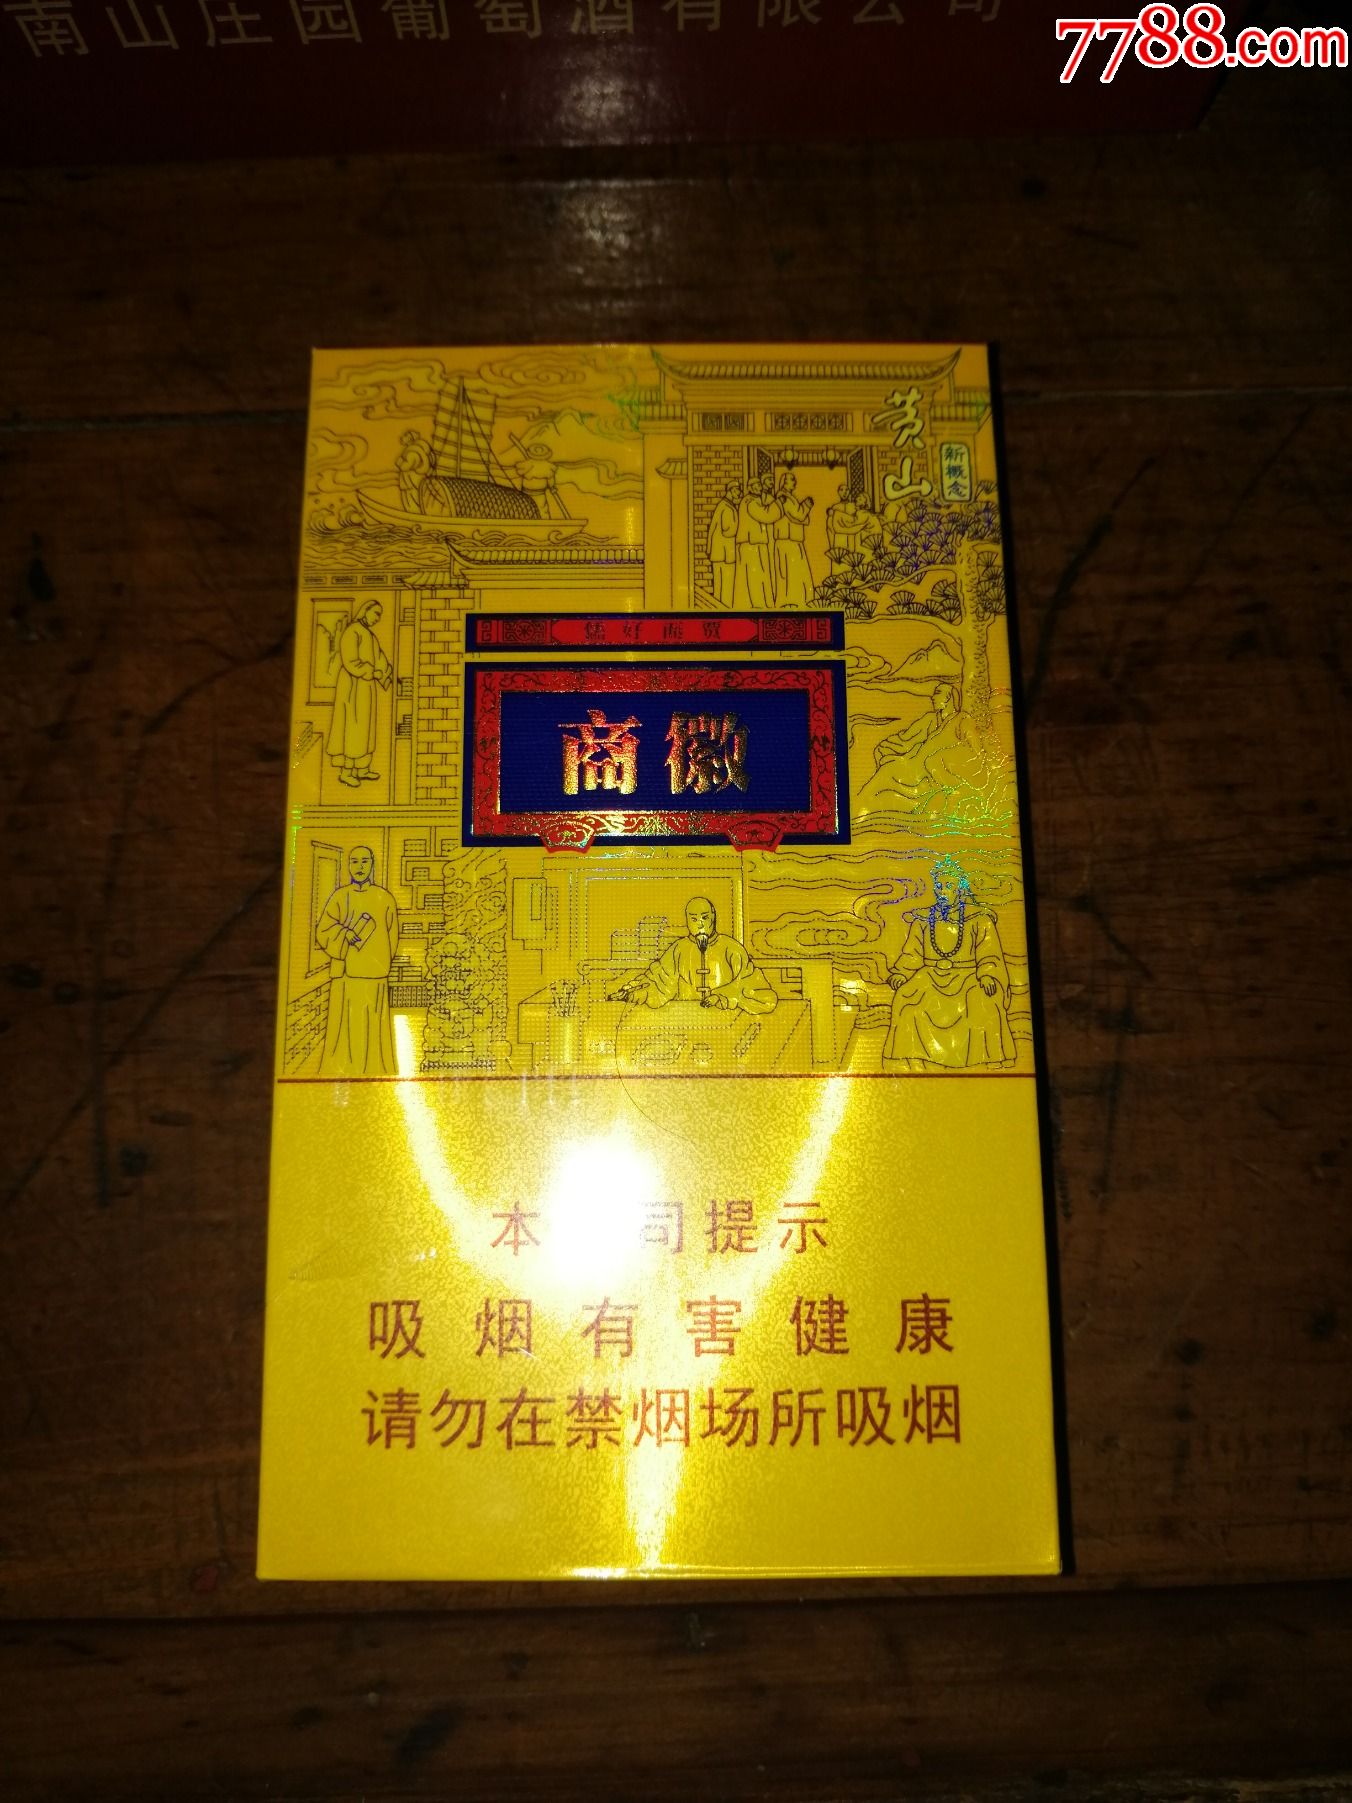 高端希缺产品收藏安徽黄山新概念香烟徽商非卖品只有一件便宜出